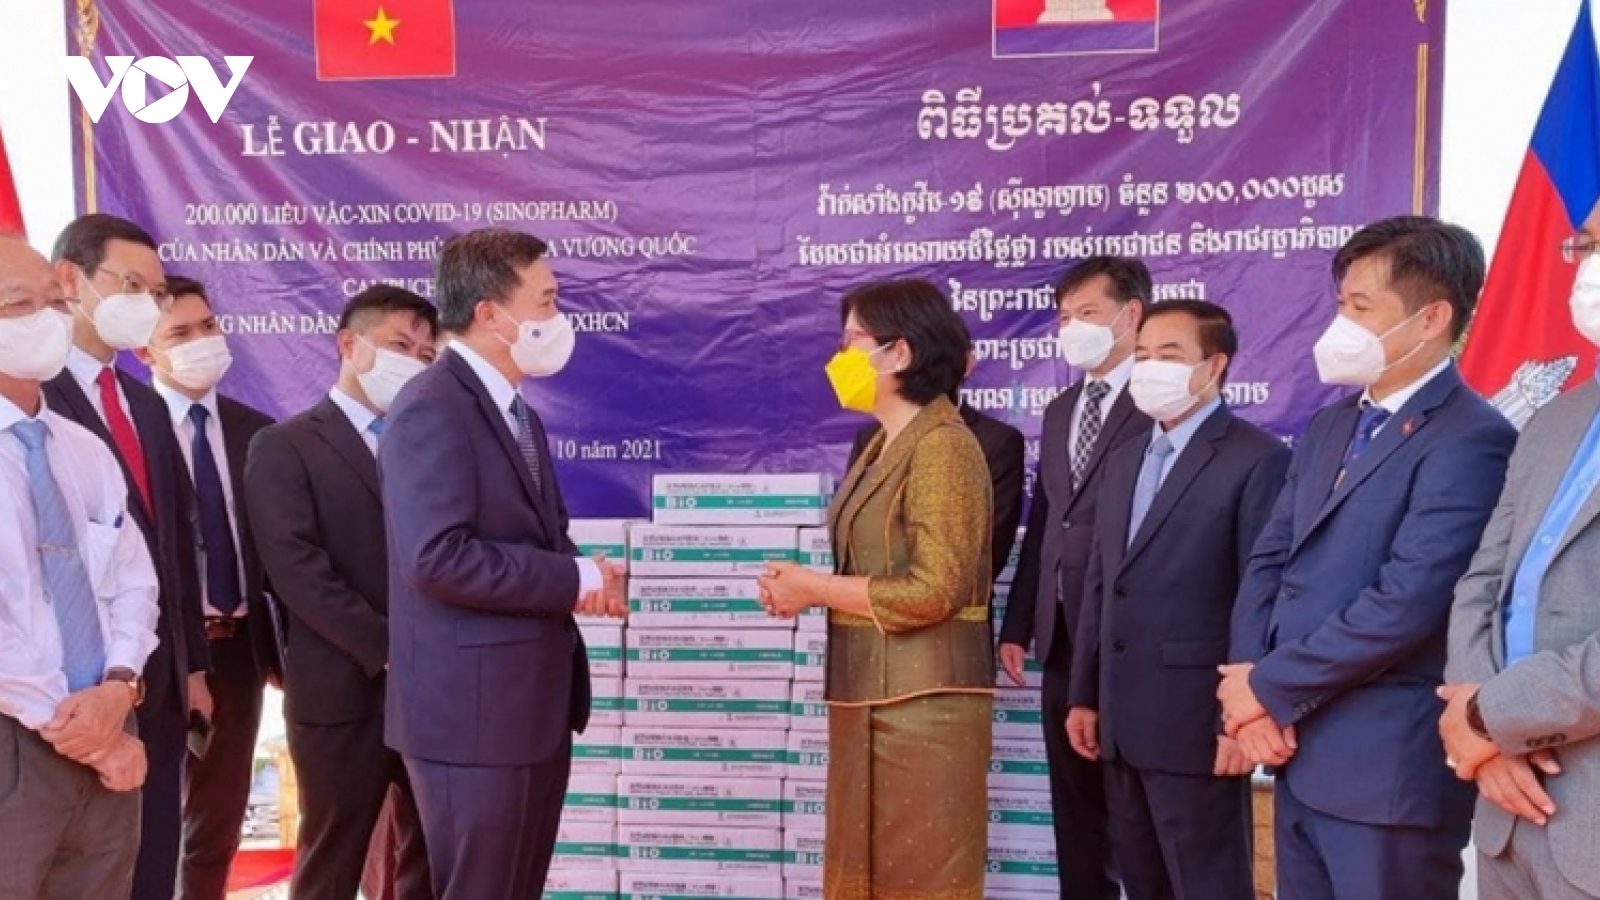 Campuchia chính thức trao tặng Việt Nam 200.000 liều vaccine ngừa Covid-19